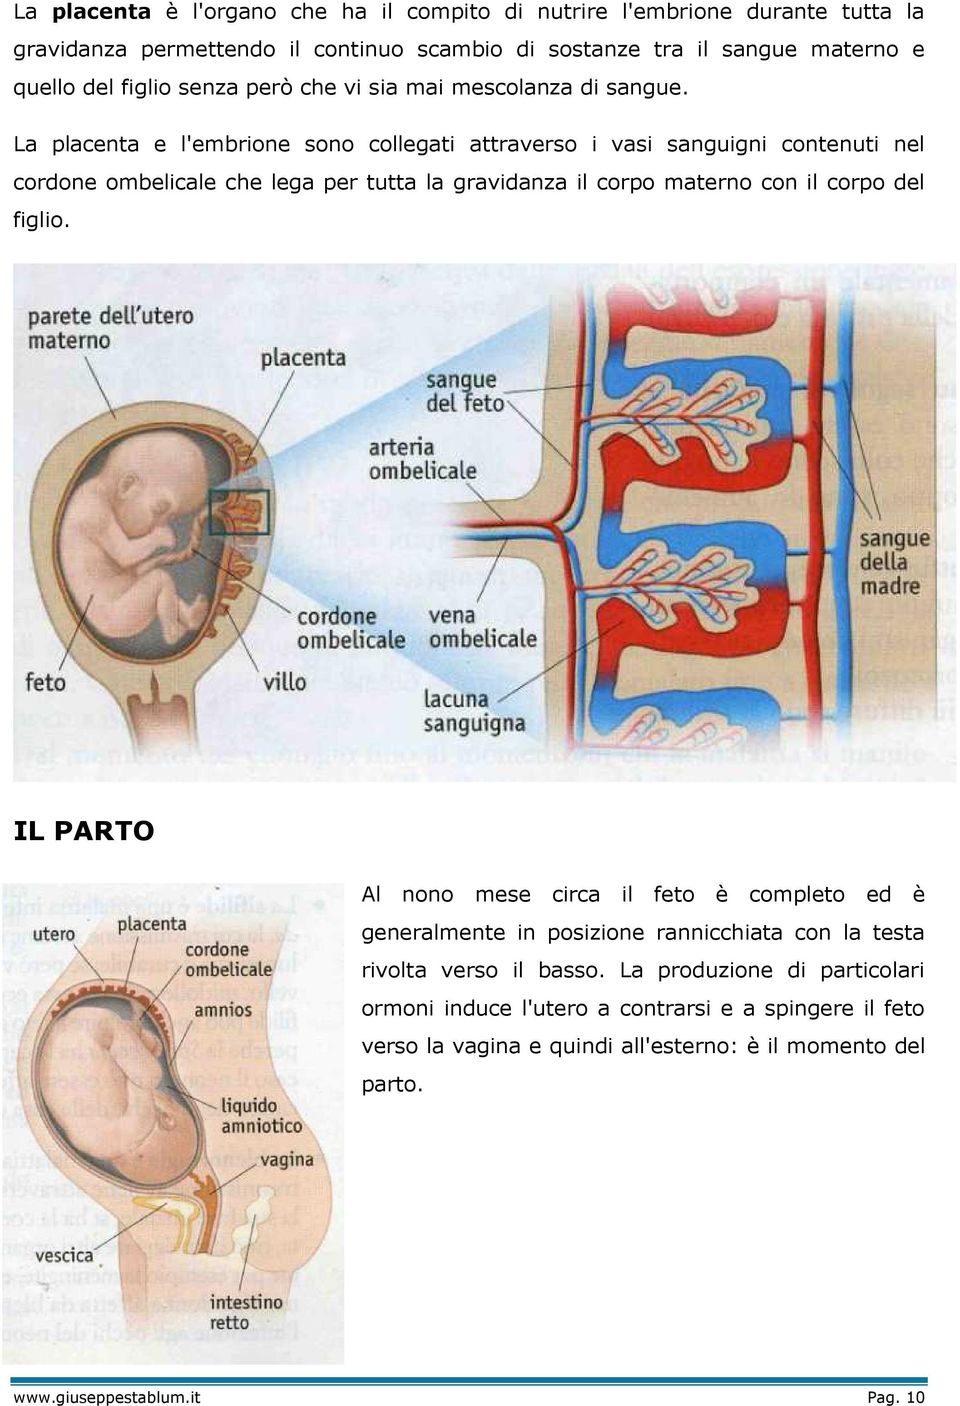 La placenta e l'embrione sono collegati attraverso i vasi sanguigni contenuti nel cordone ombelicale che lega per tutta la gravidanza il corpo materno con il corpo del figlio.